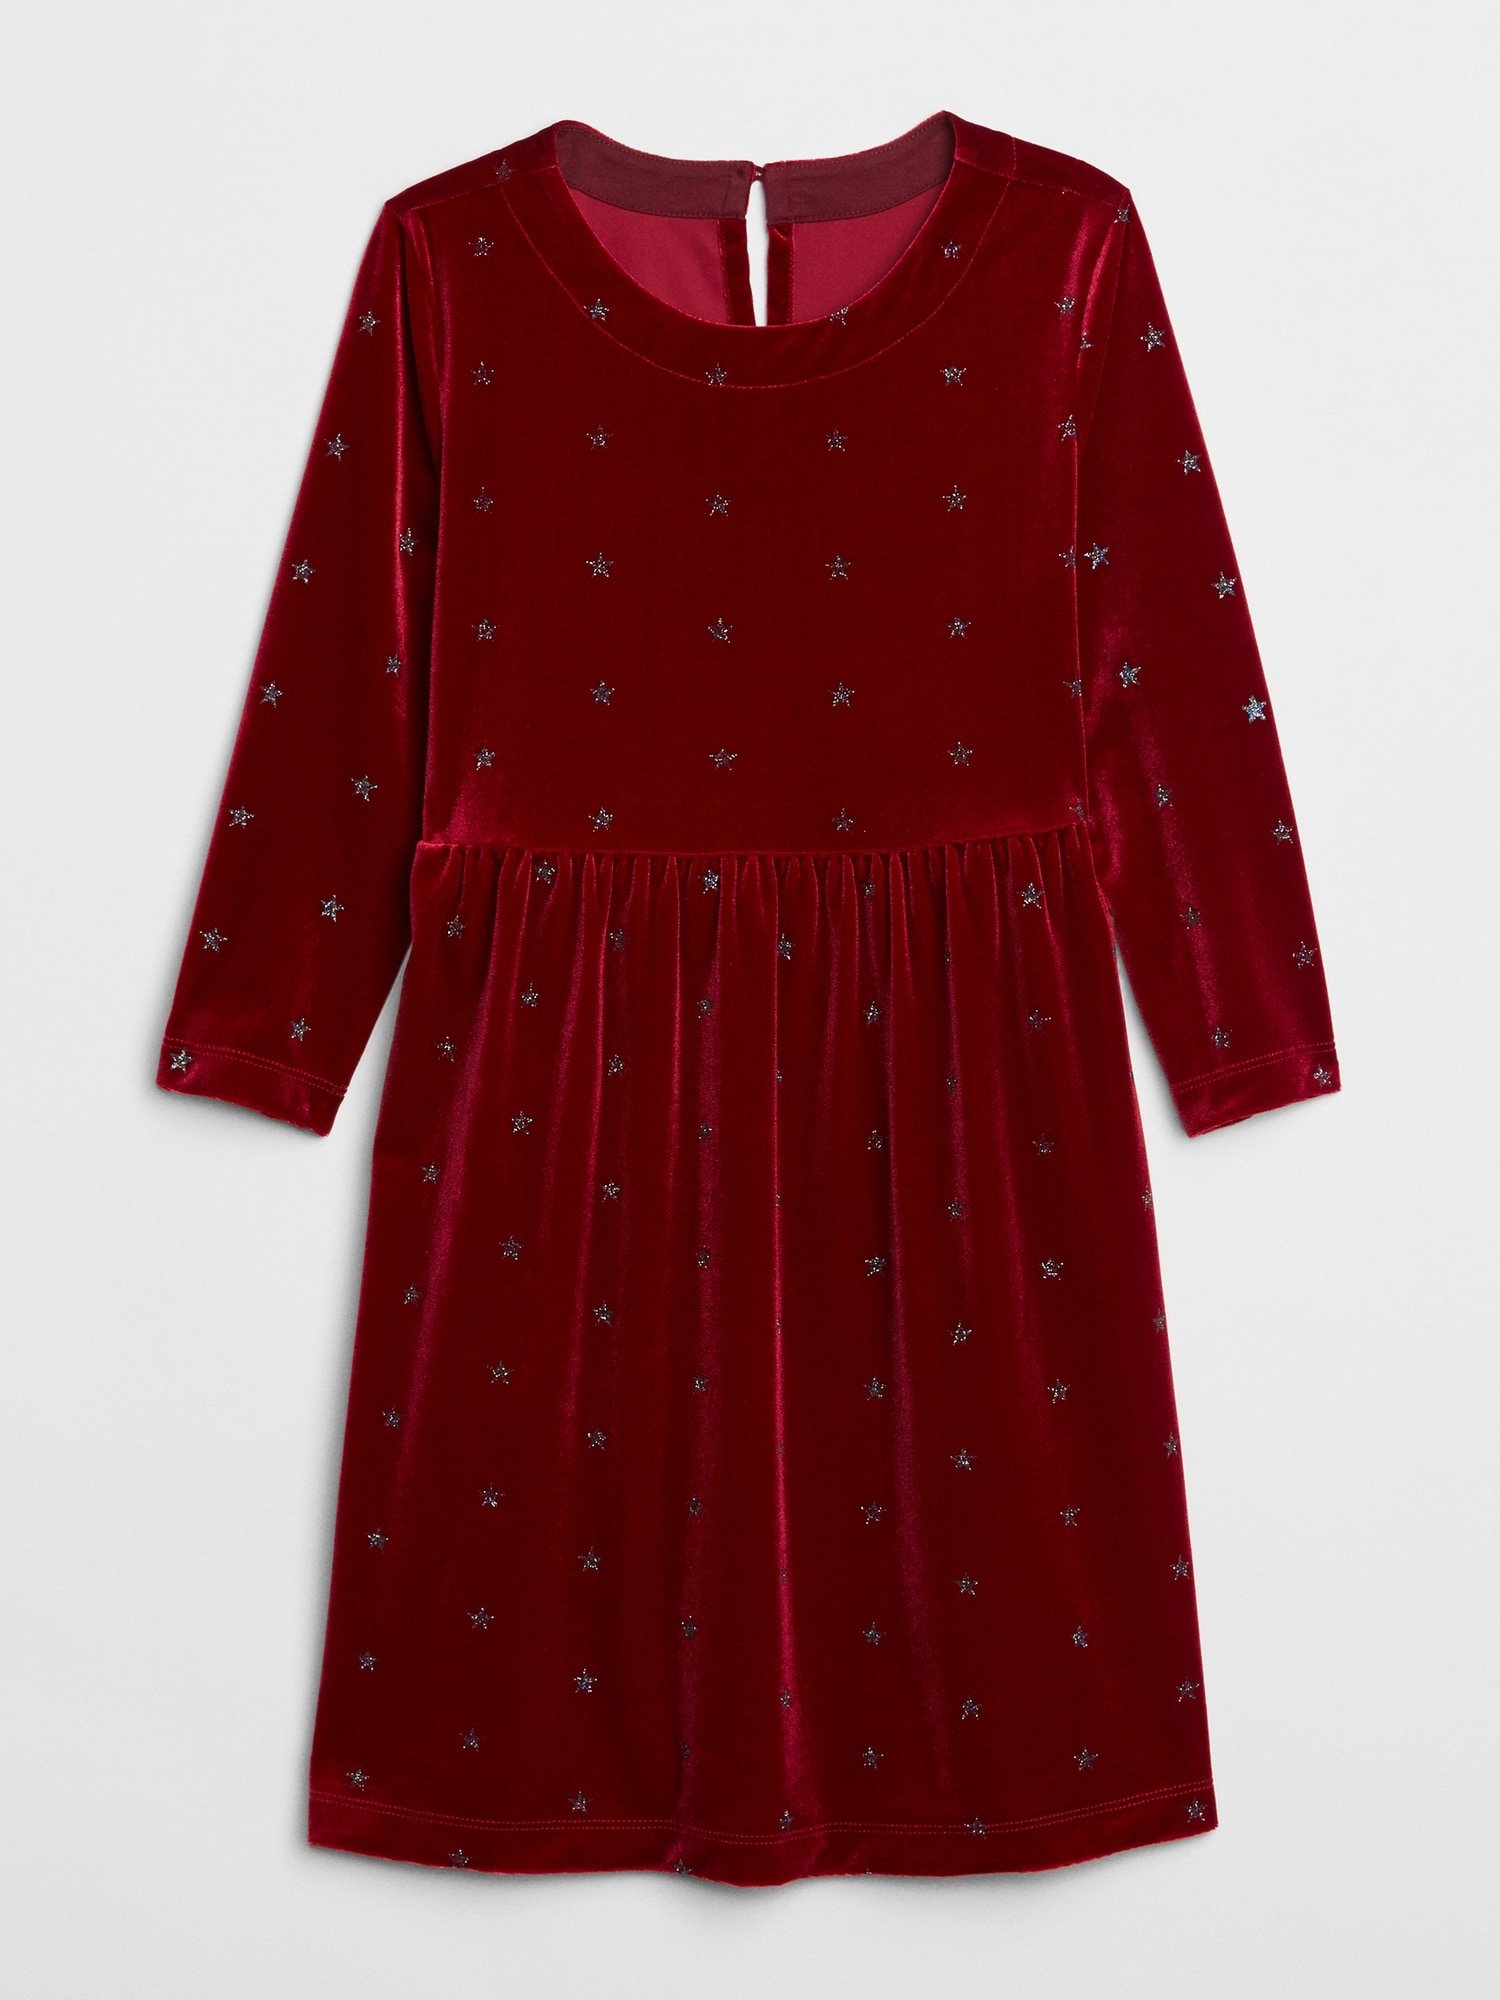 Simli Yıldız İşlemeli Kadife Elbise product image